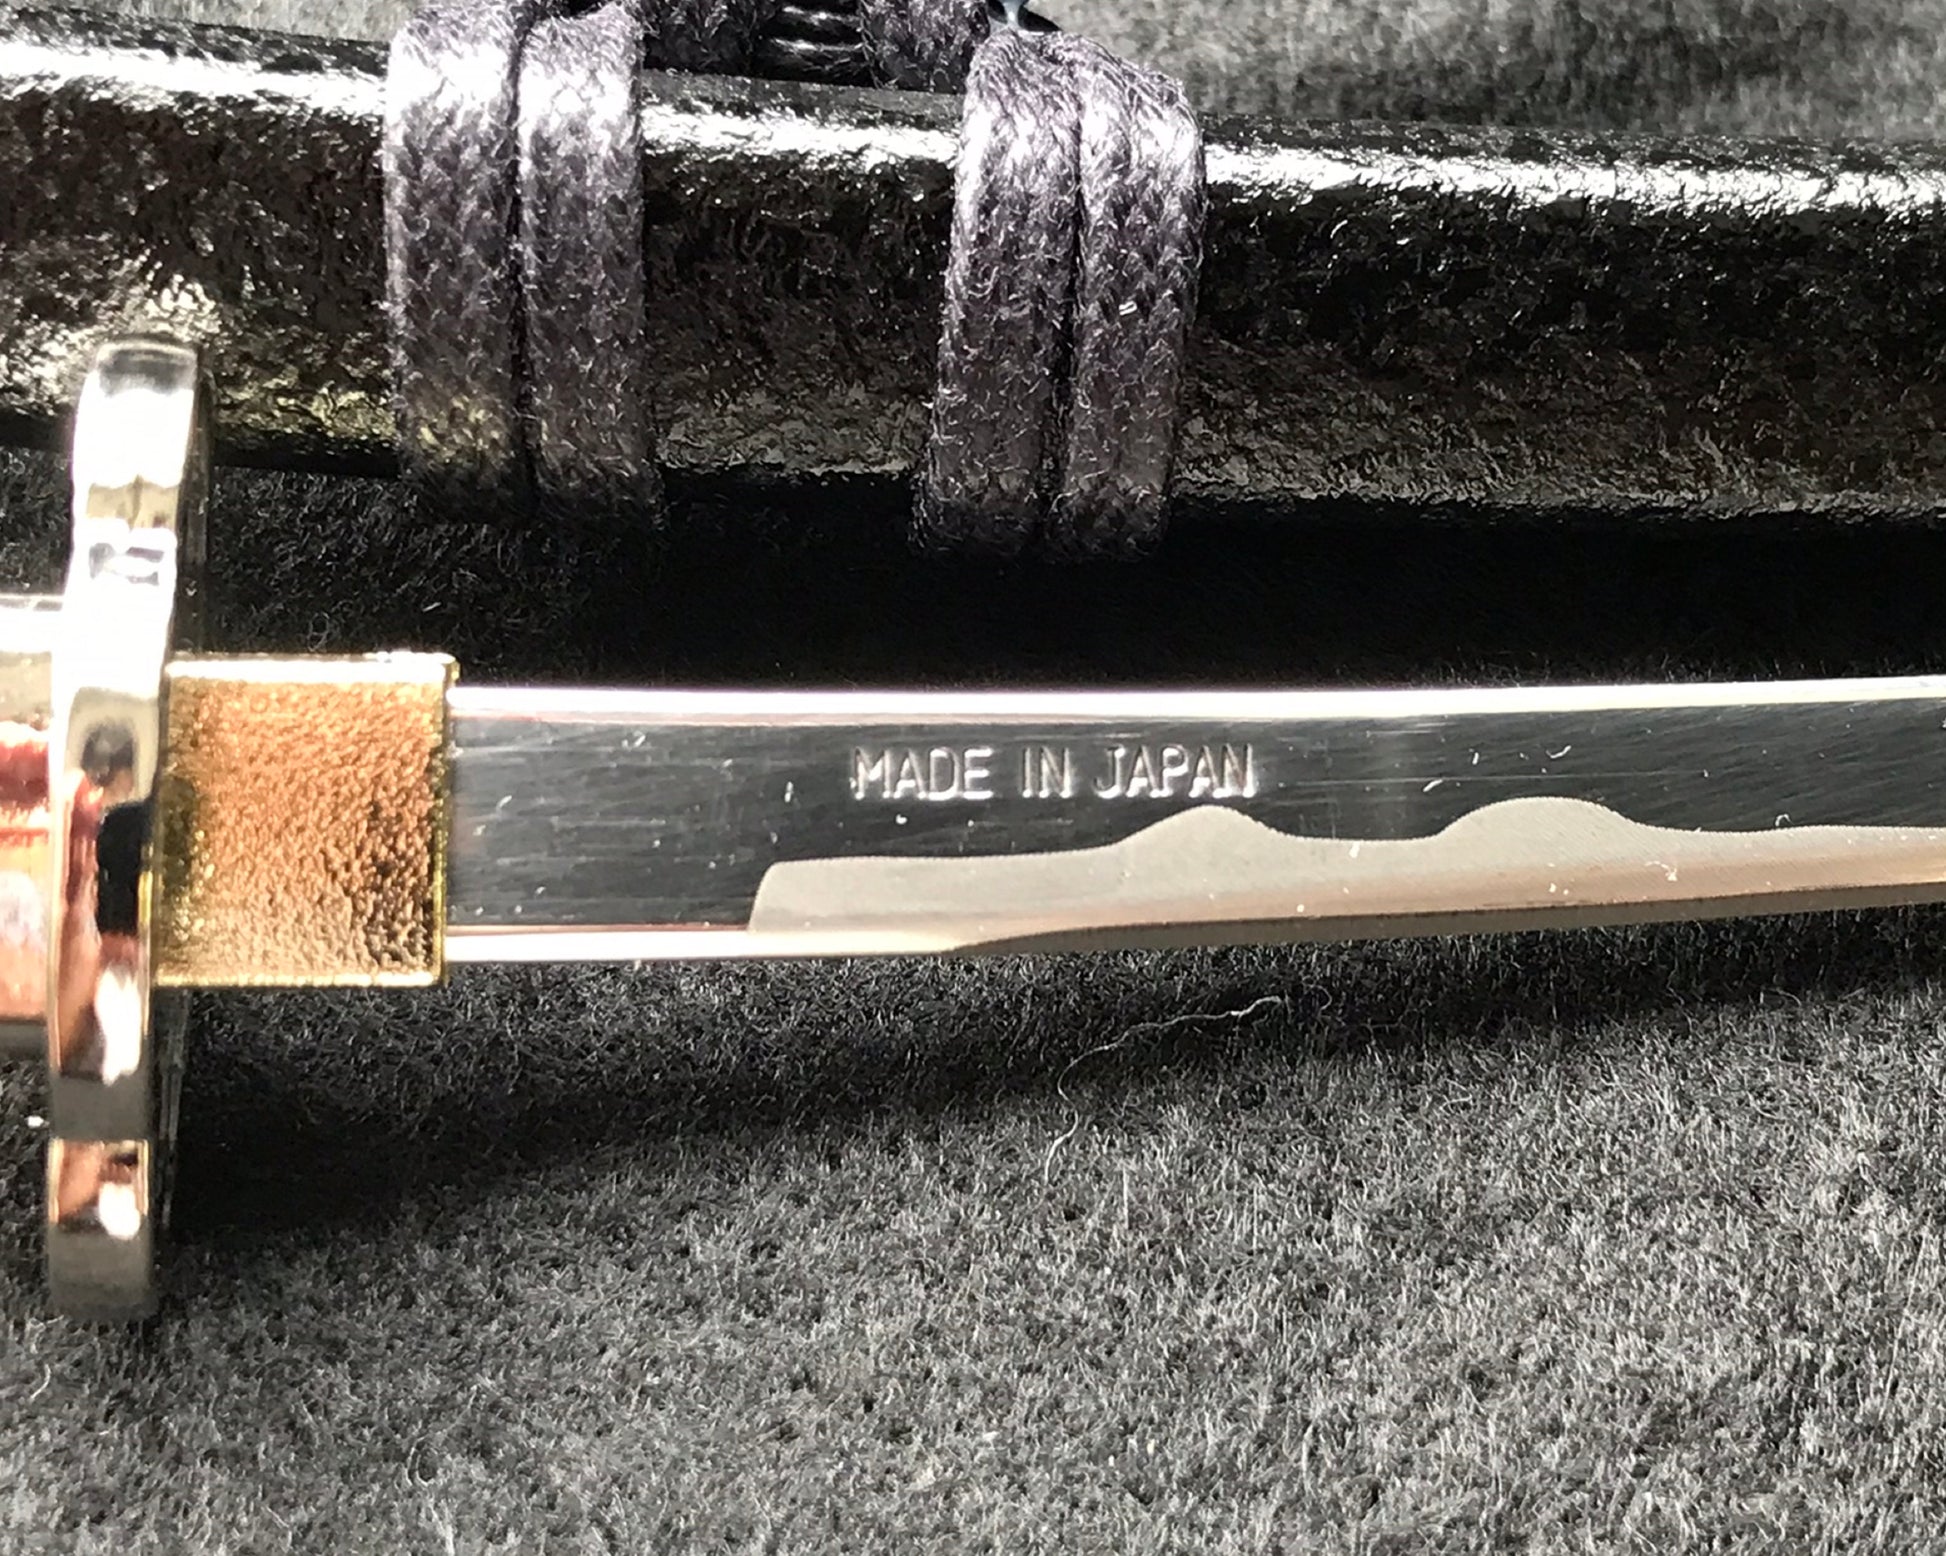 Letter Opener SAMURAI KATANA SWORD Knife Desk Decor item 8 inch Length Safe Edge Saigo Takamori Model MT-32S - JAPANESE GIFTS 